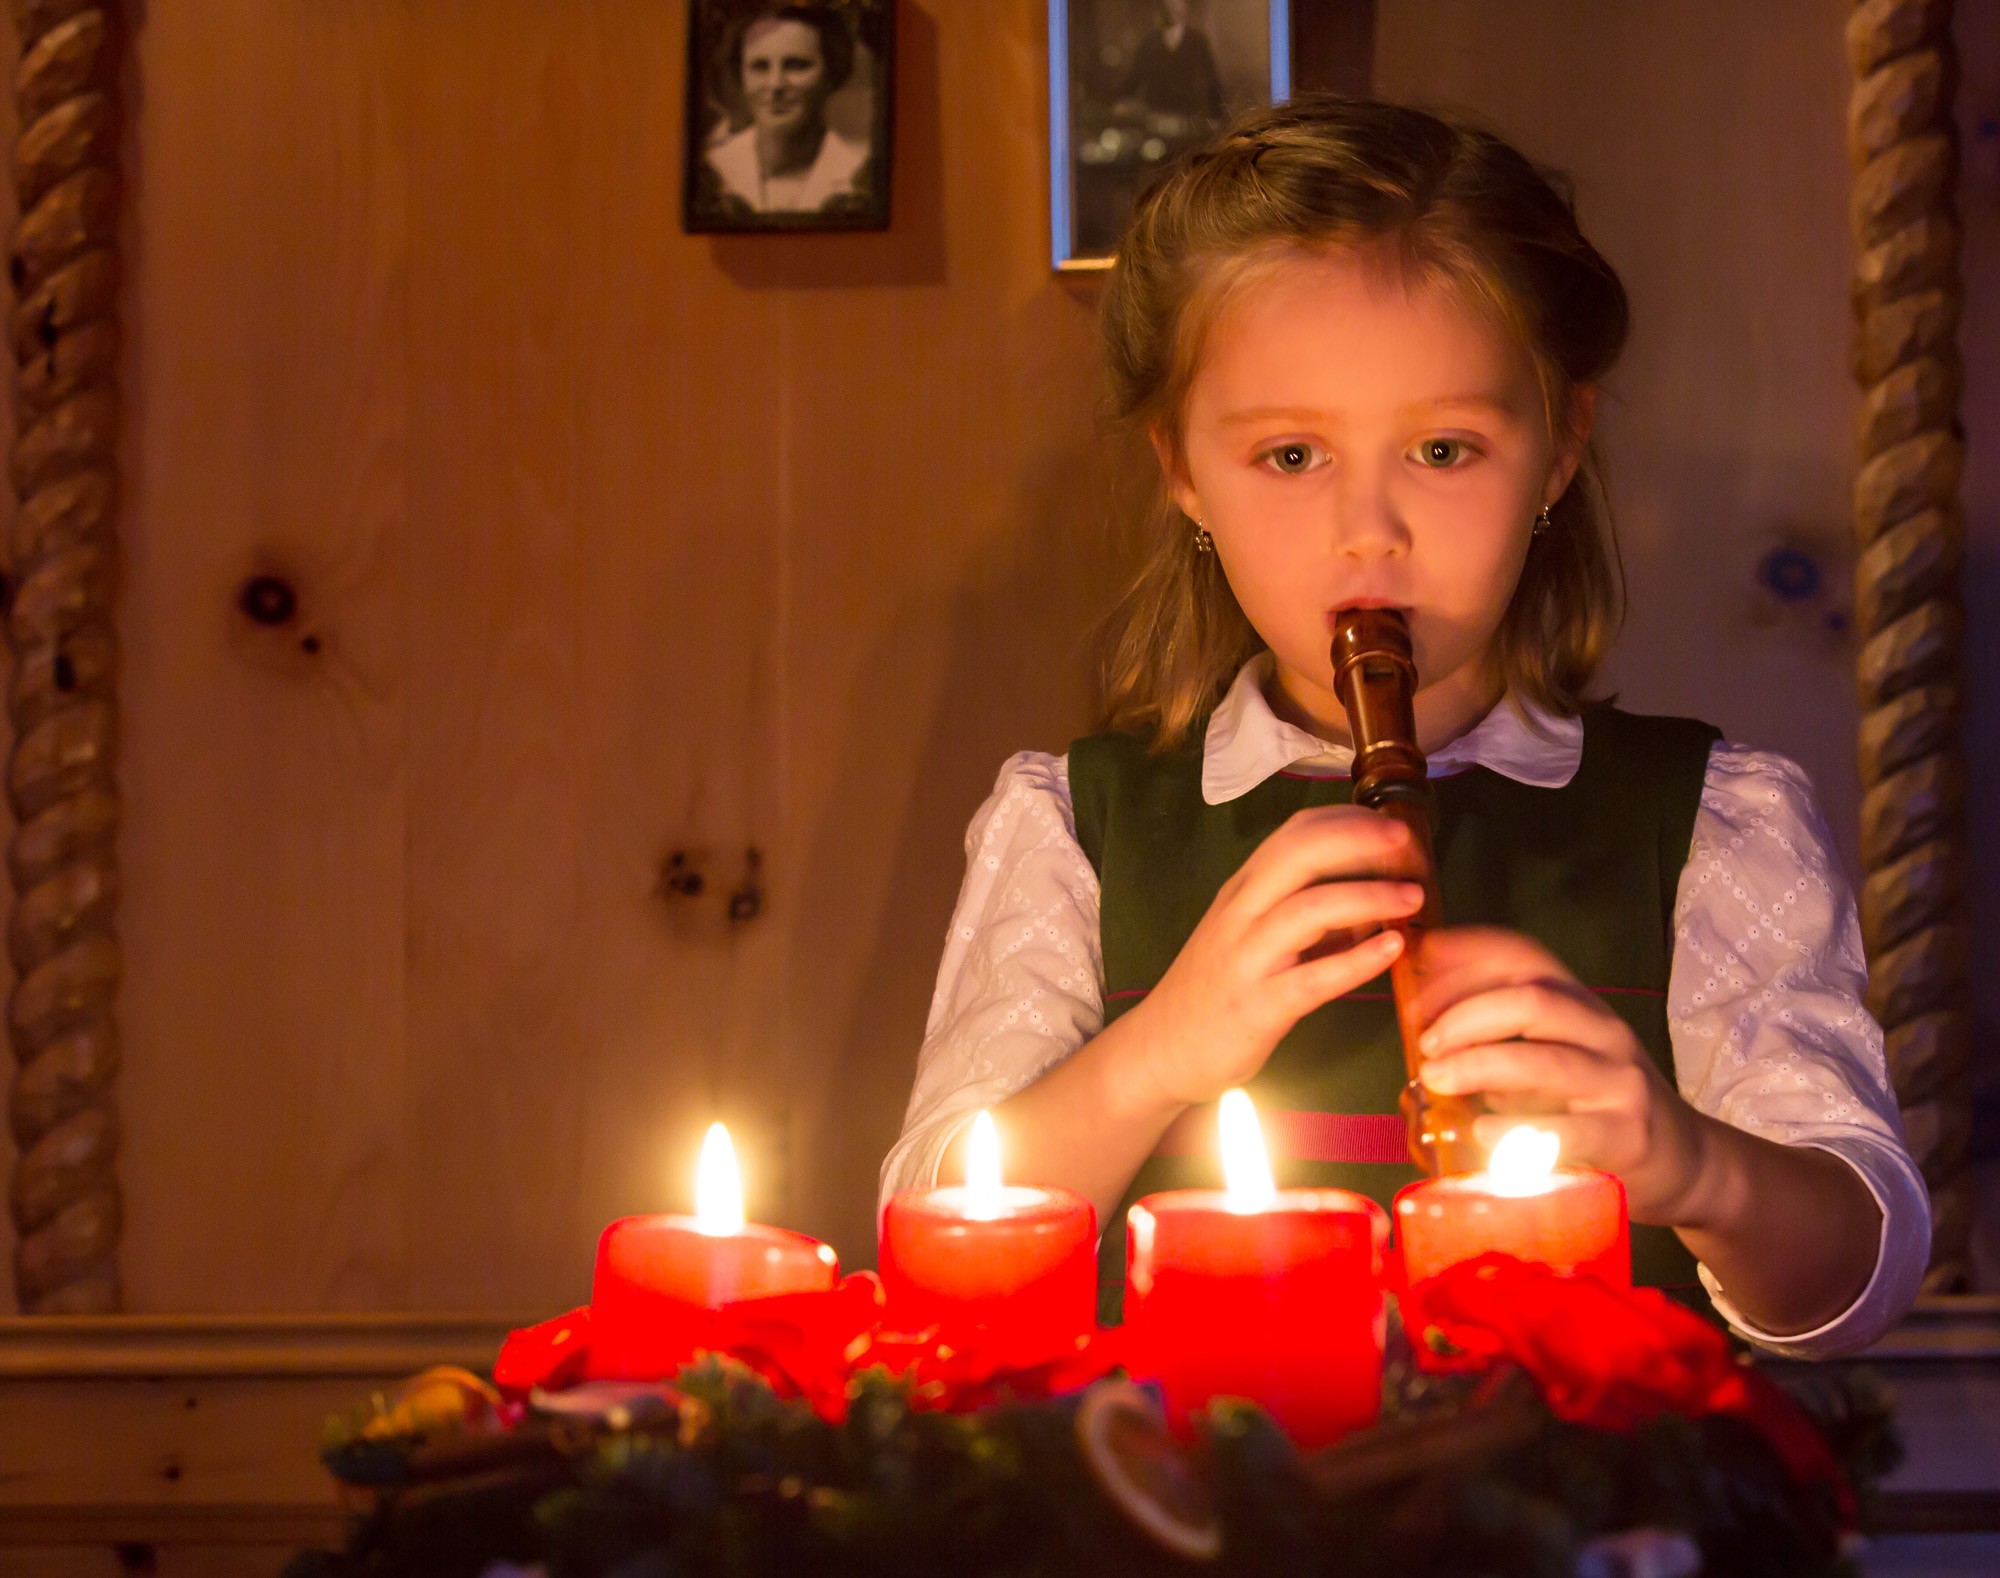 Una bambina suona il flauto davanti a 4 candele rosse accese